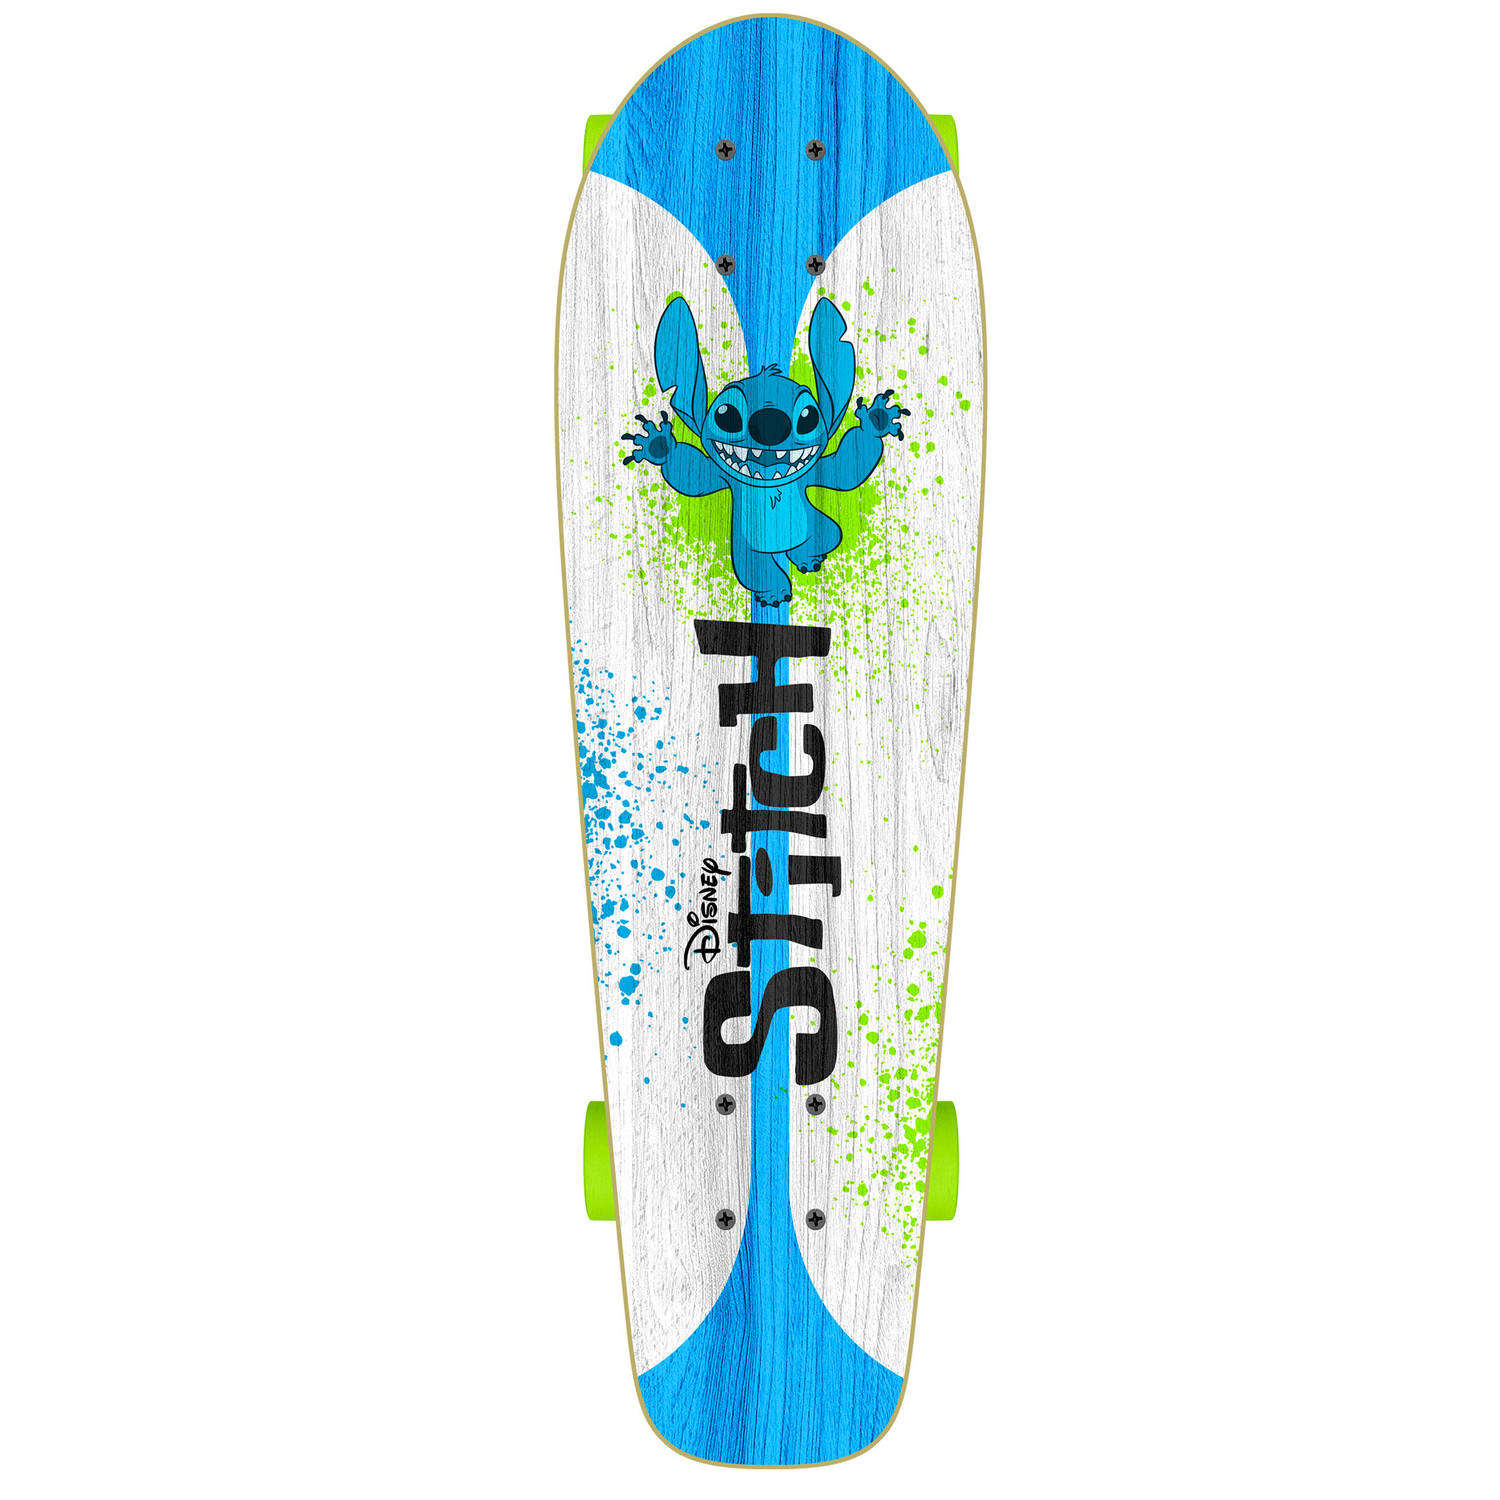 Disney Stitch skateboard 70 x 20 cm wit/blauw/groen